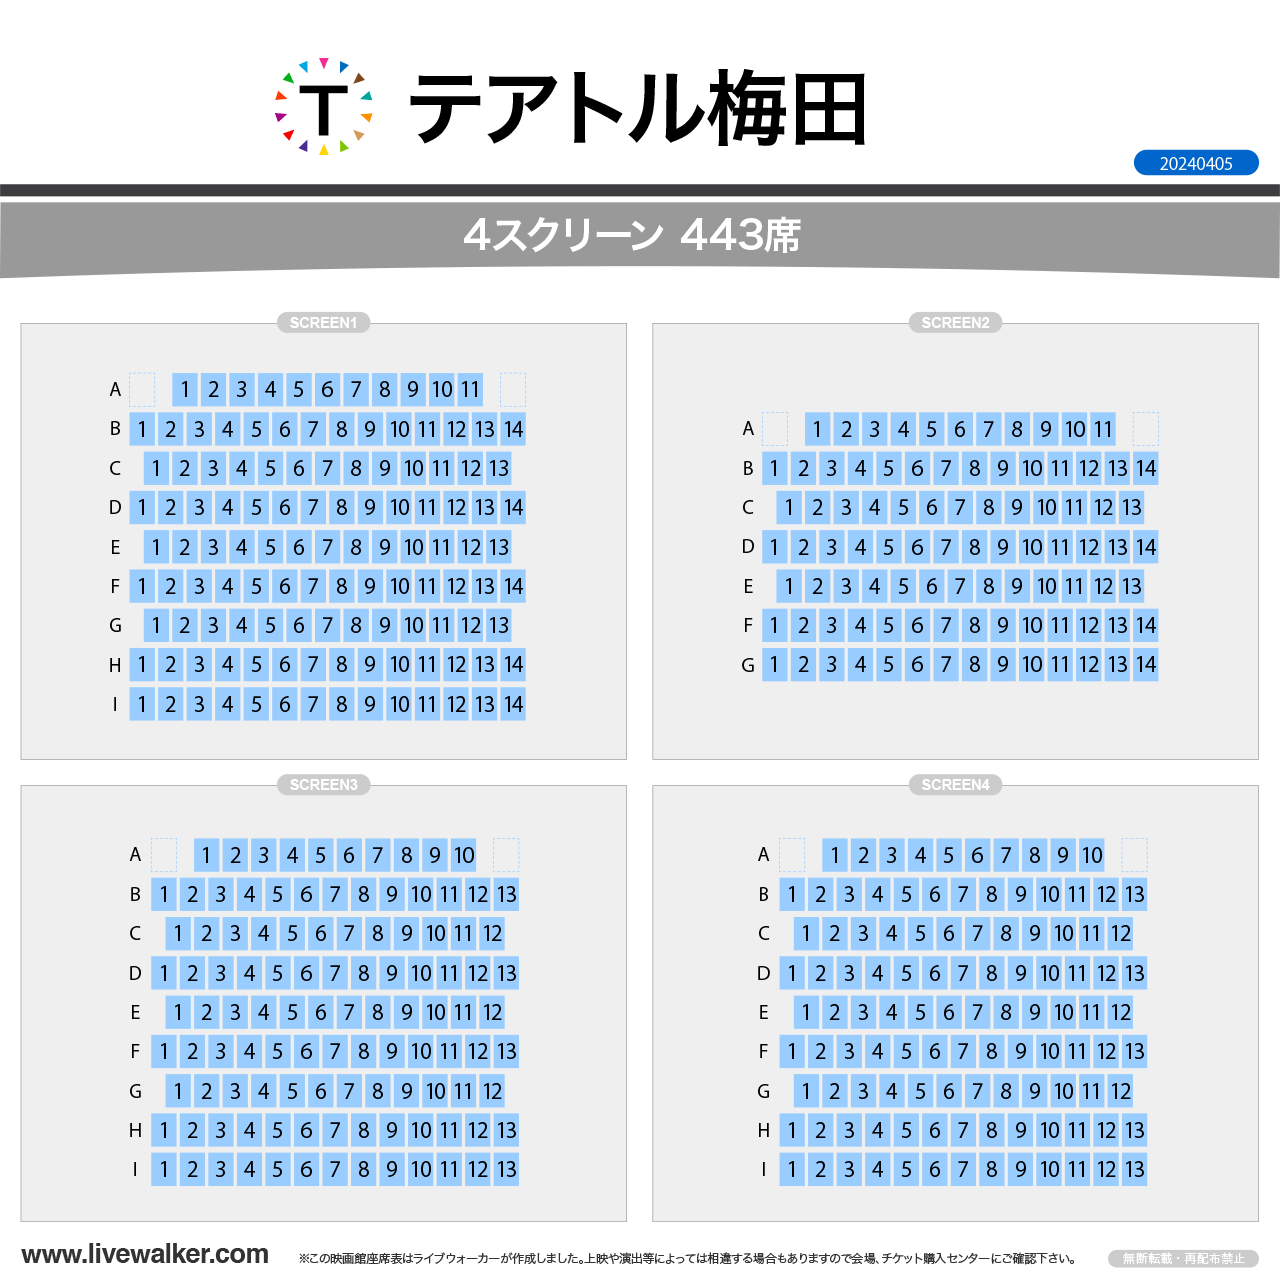 シネ・リーブル梅田シネマの座席表